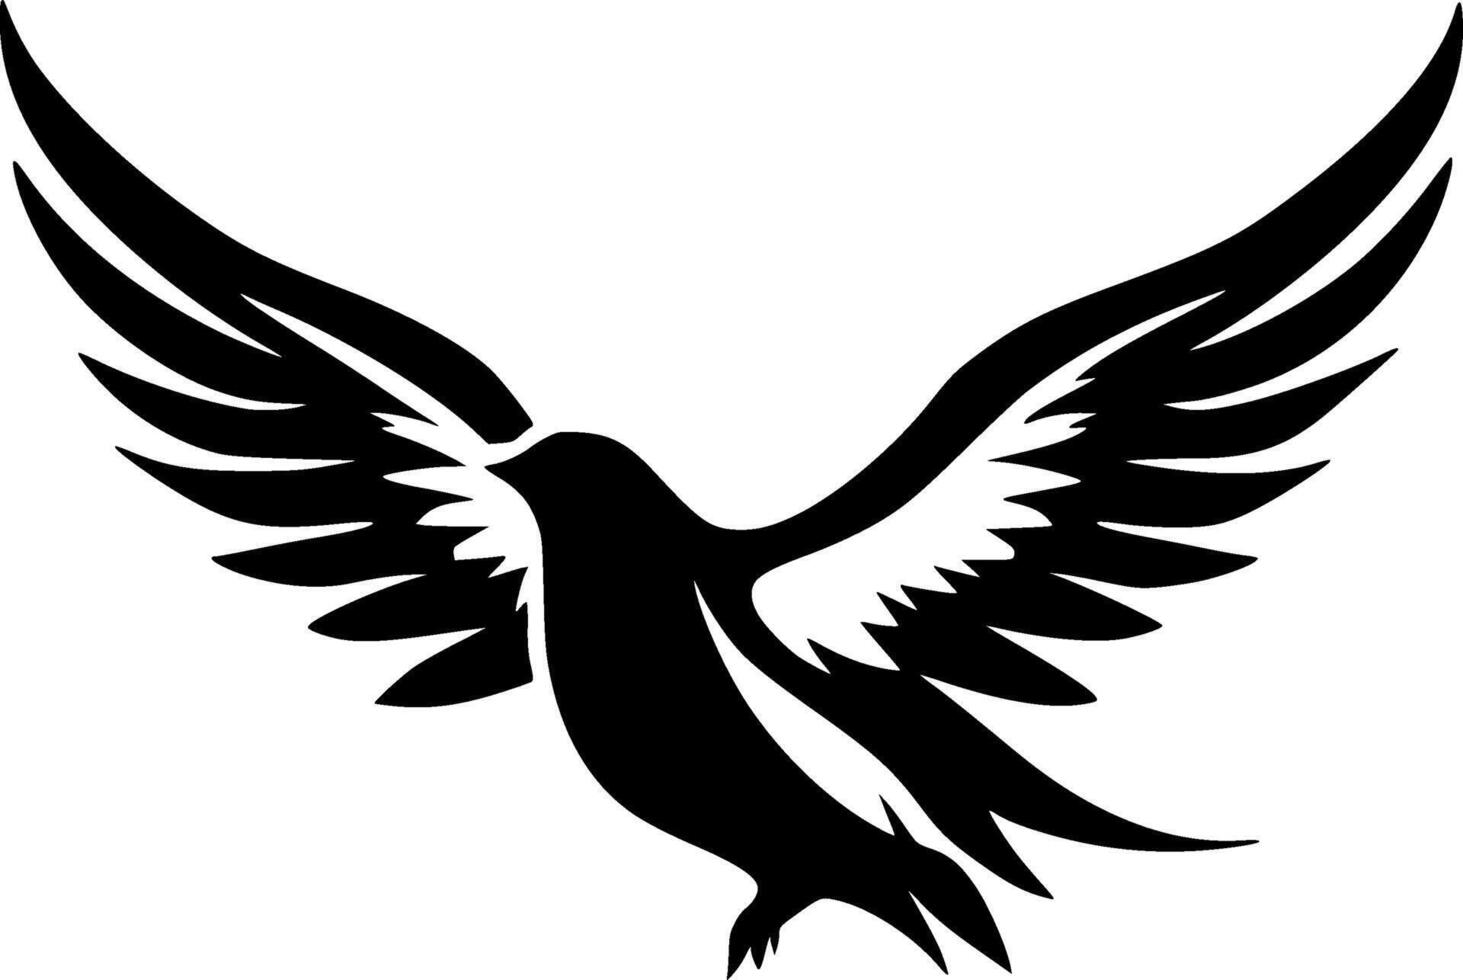 Colombe oiseau, noir et blanc vecteur illustration